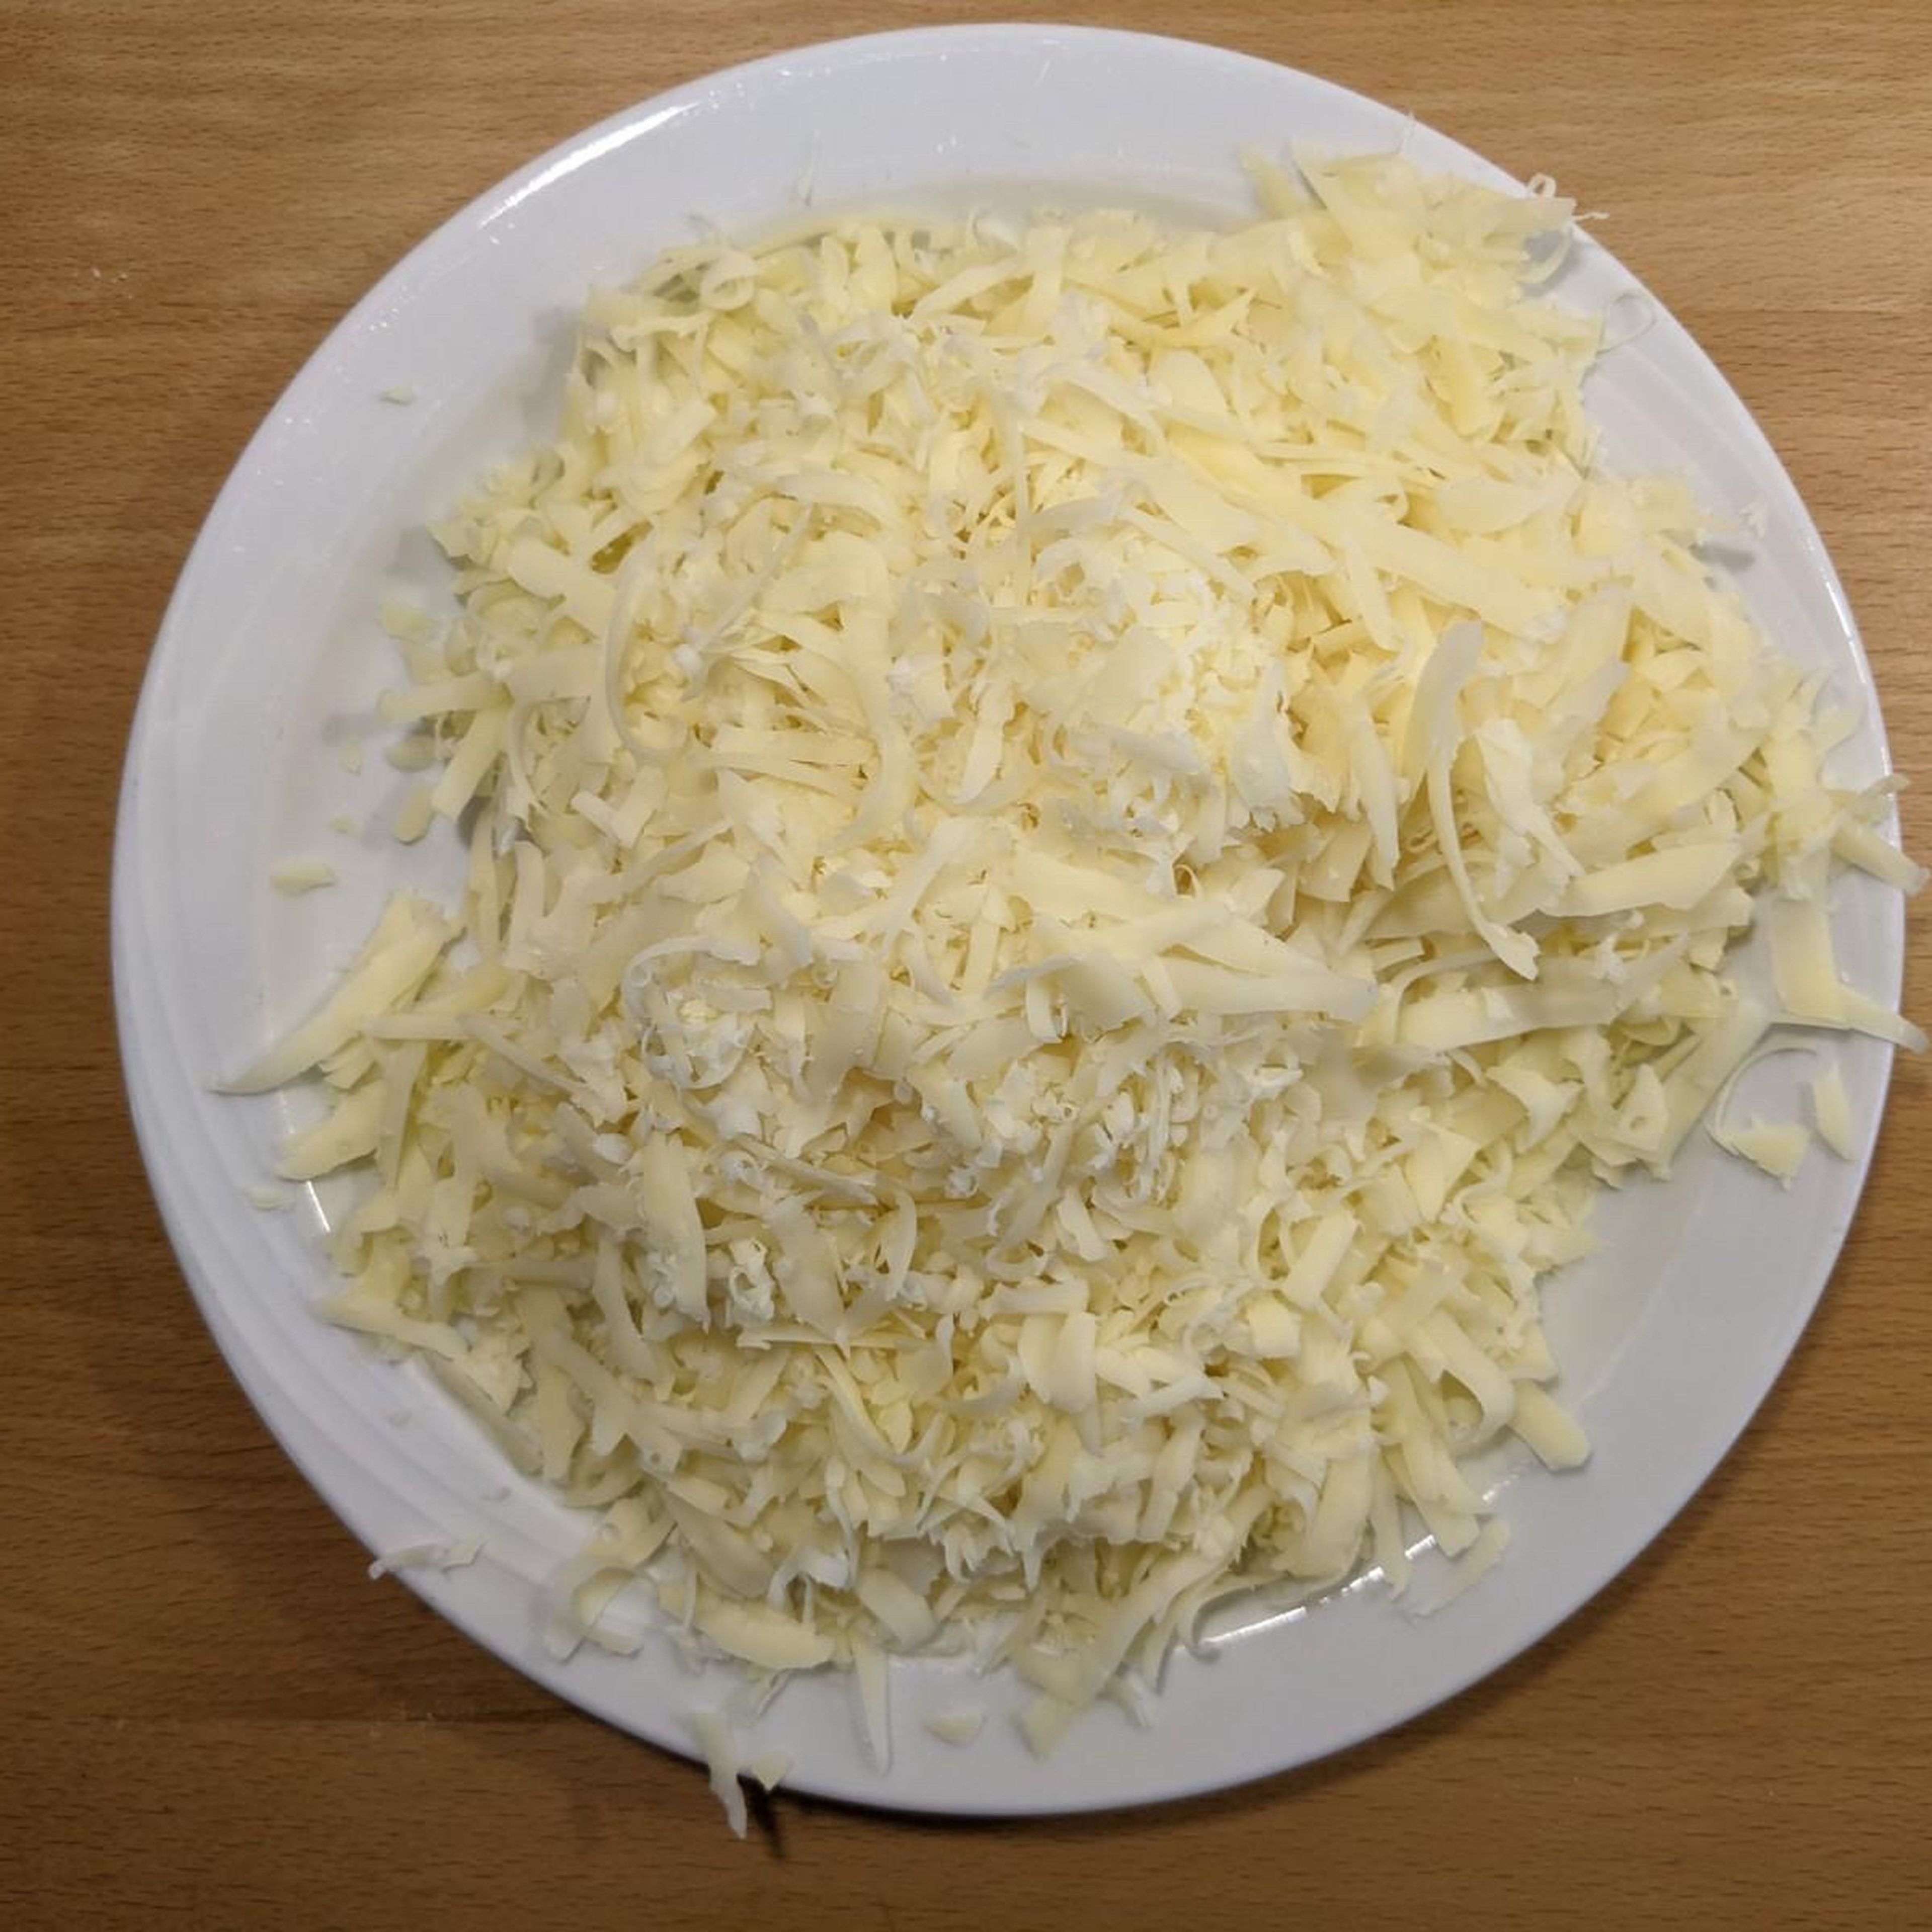 Hole dir eine Käsereibe und nutze die Seite, bei welcher die größte Käsestückchen übrigbleiben.